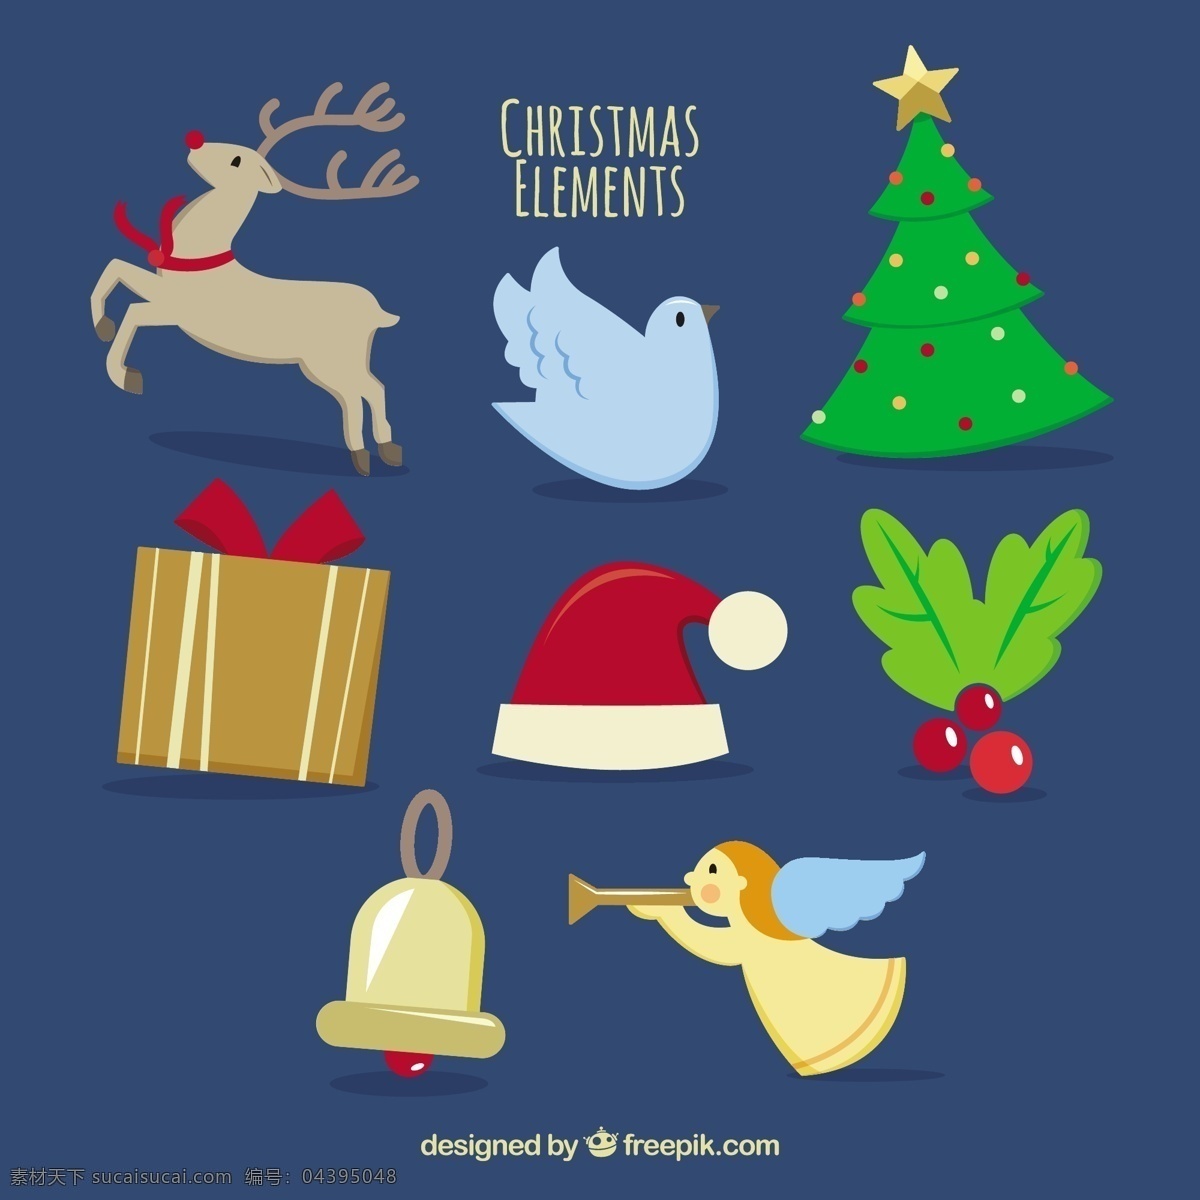 绘制 圣诞 元素 圣诞树 礼物 圣诞快乐 冬天 天使 快乐 庆祝 鹿 帽子 假日 鸽子 节日快乐 说明 铃铛 圣诞帽 槲寄生 青色 天蓝色